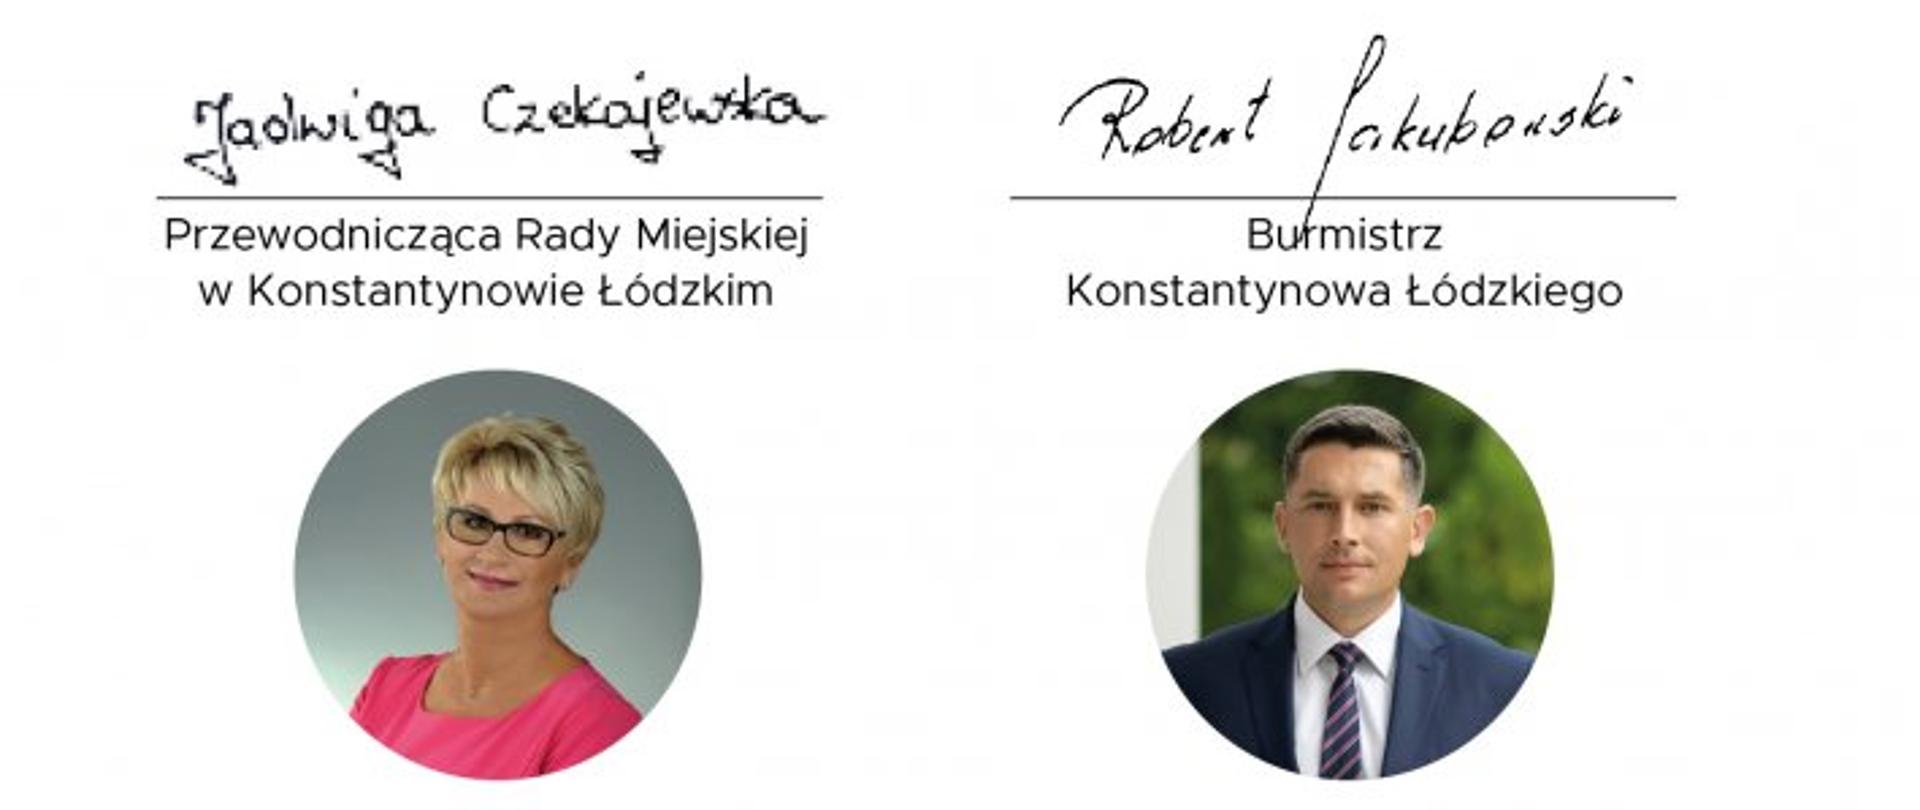 Na białym tle po lewej stronie znajduje się napis "Przewodnicząca Rady Miejskiej w Konstantynowie Łódzkim" oraz podpis, a pod nimi w kółku jej zdjęcie. Po prawej stronie znajduje się napis "Burmistrz Konstantynowa Łódzkiego" oraz podpis, a pod nimi w kółku jego zdjęcie.